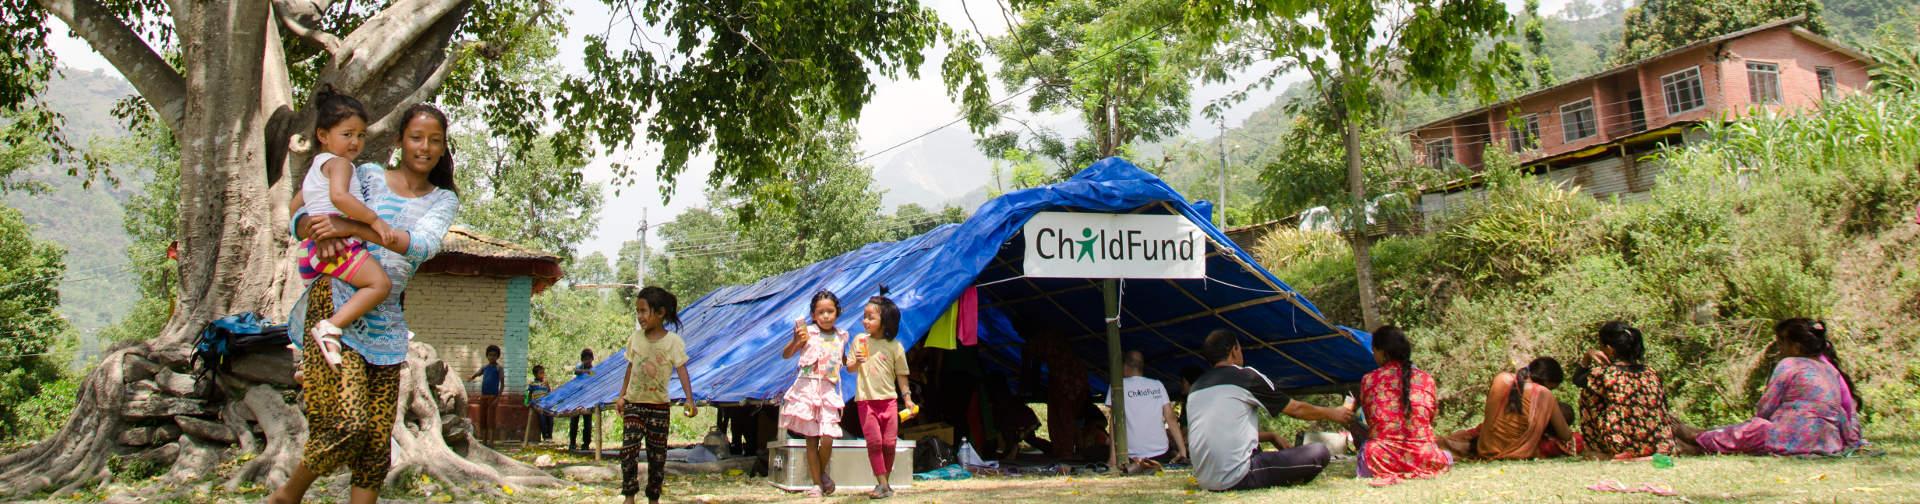 Kinderschutzzentrum vom Kinderhilfswerk ChildFund